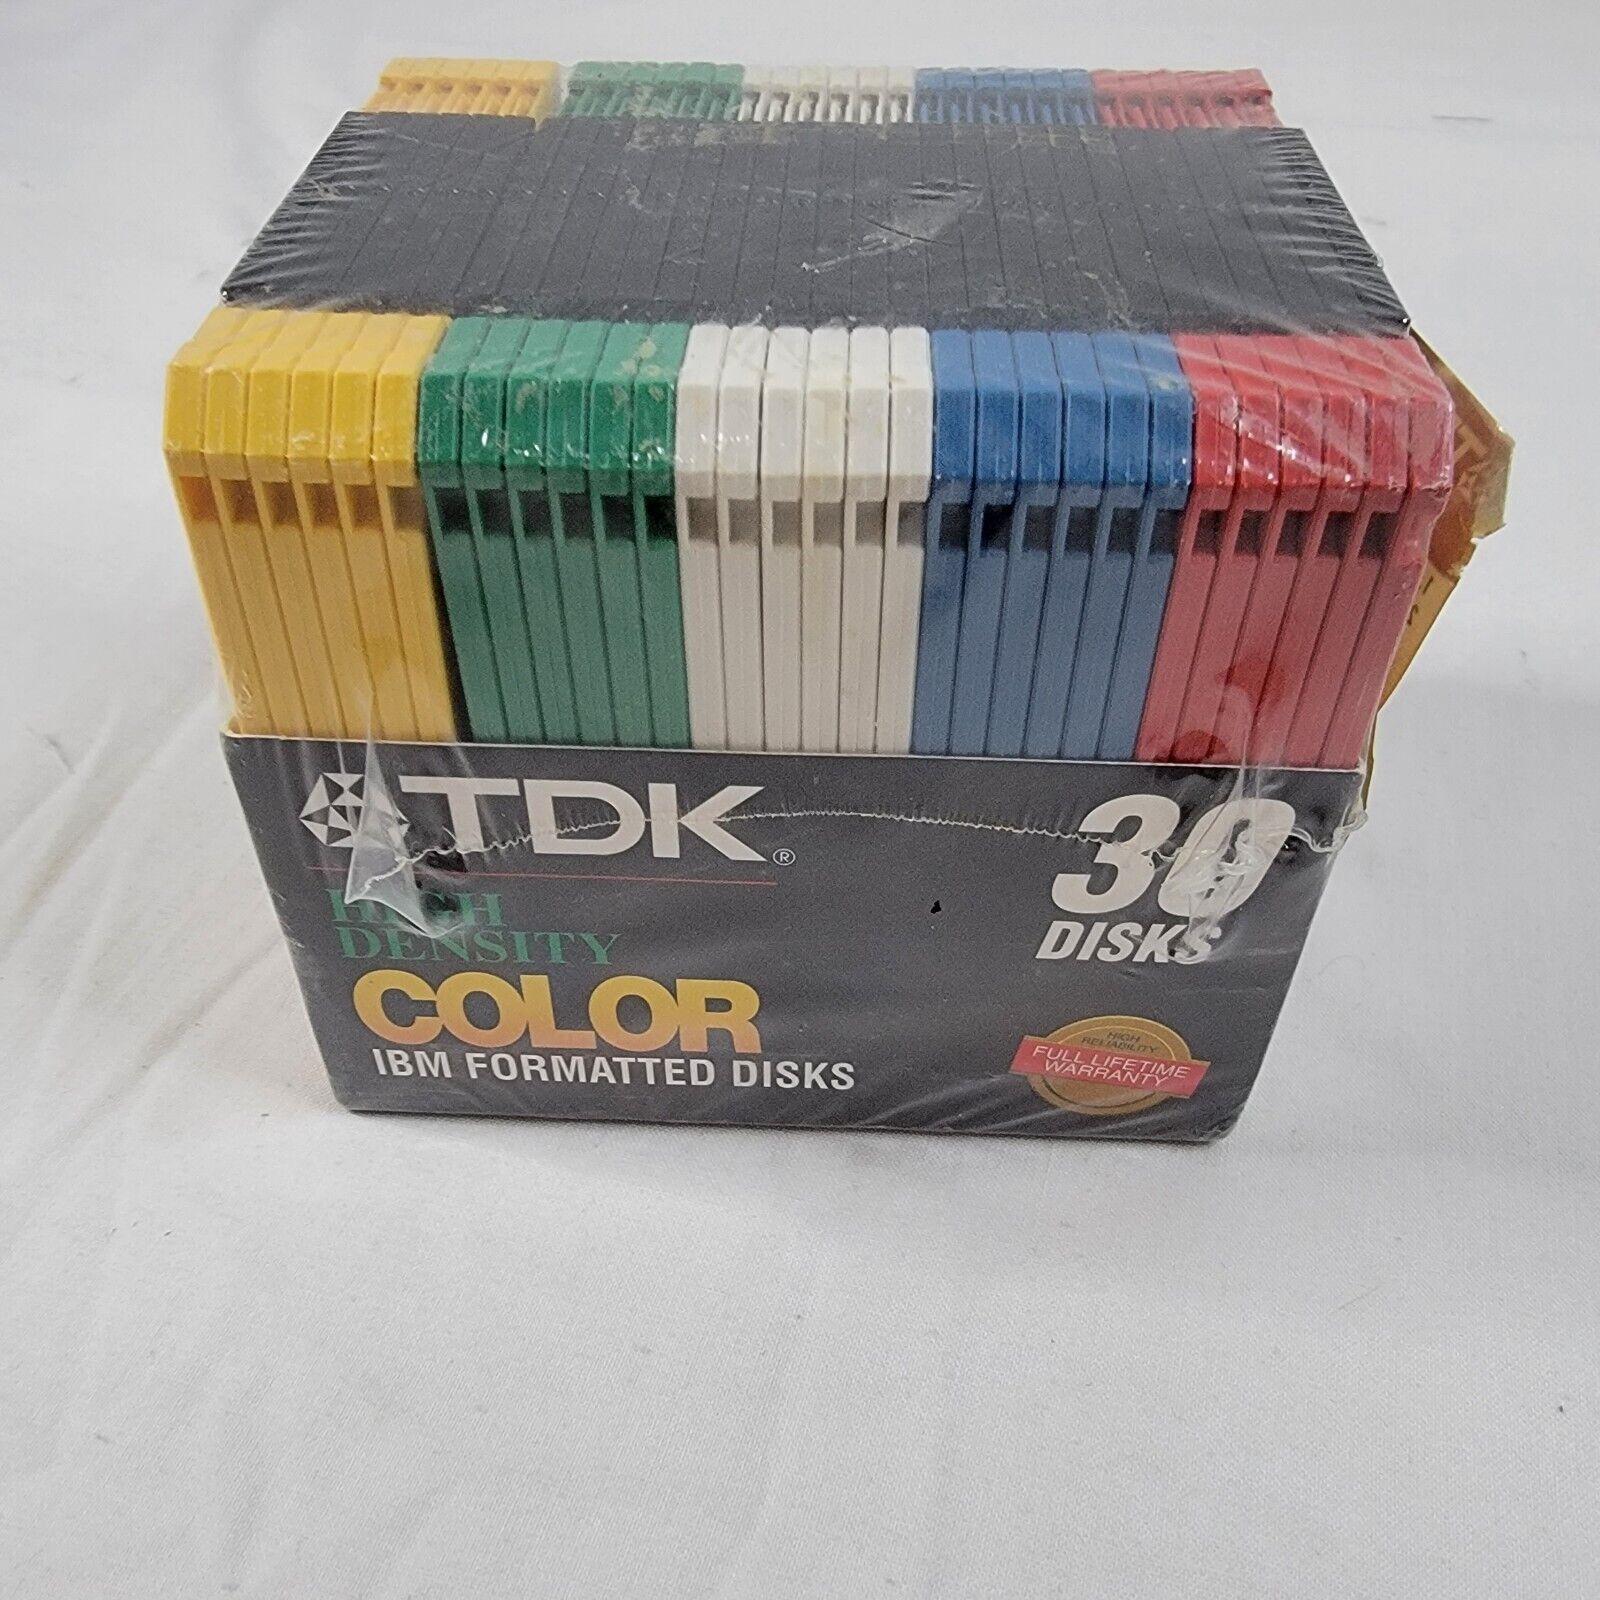 TDK 30 Pack High Density 3.5 IBM Formatted Color Floppy Disks NIB Sealed